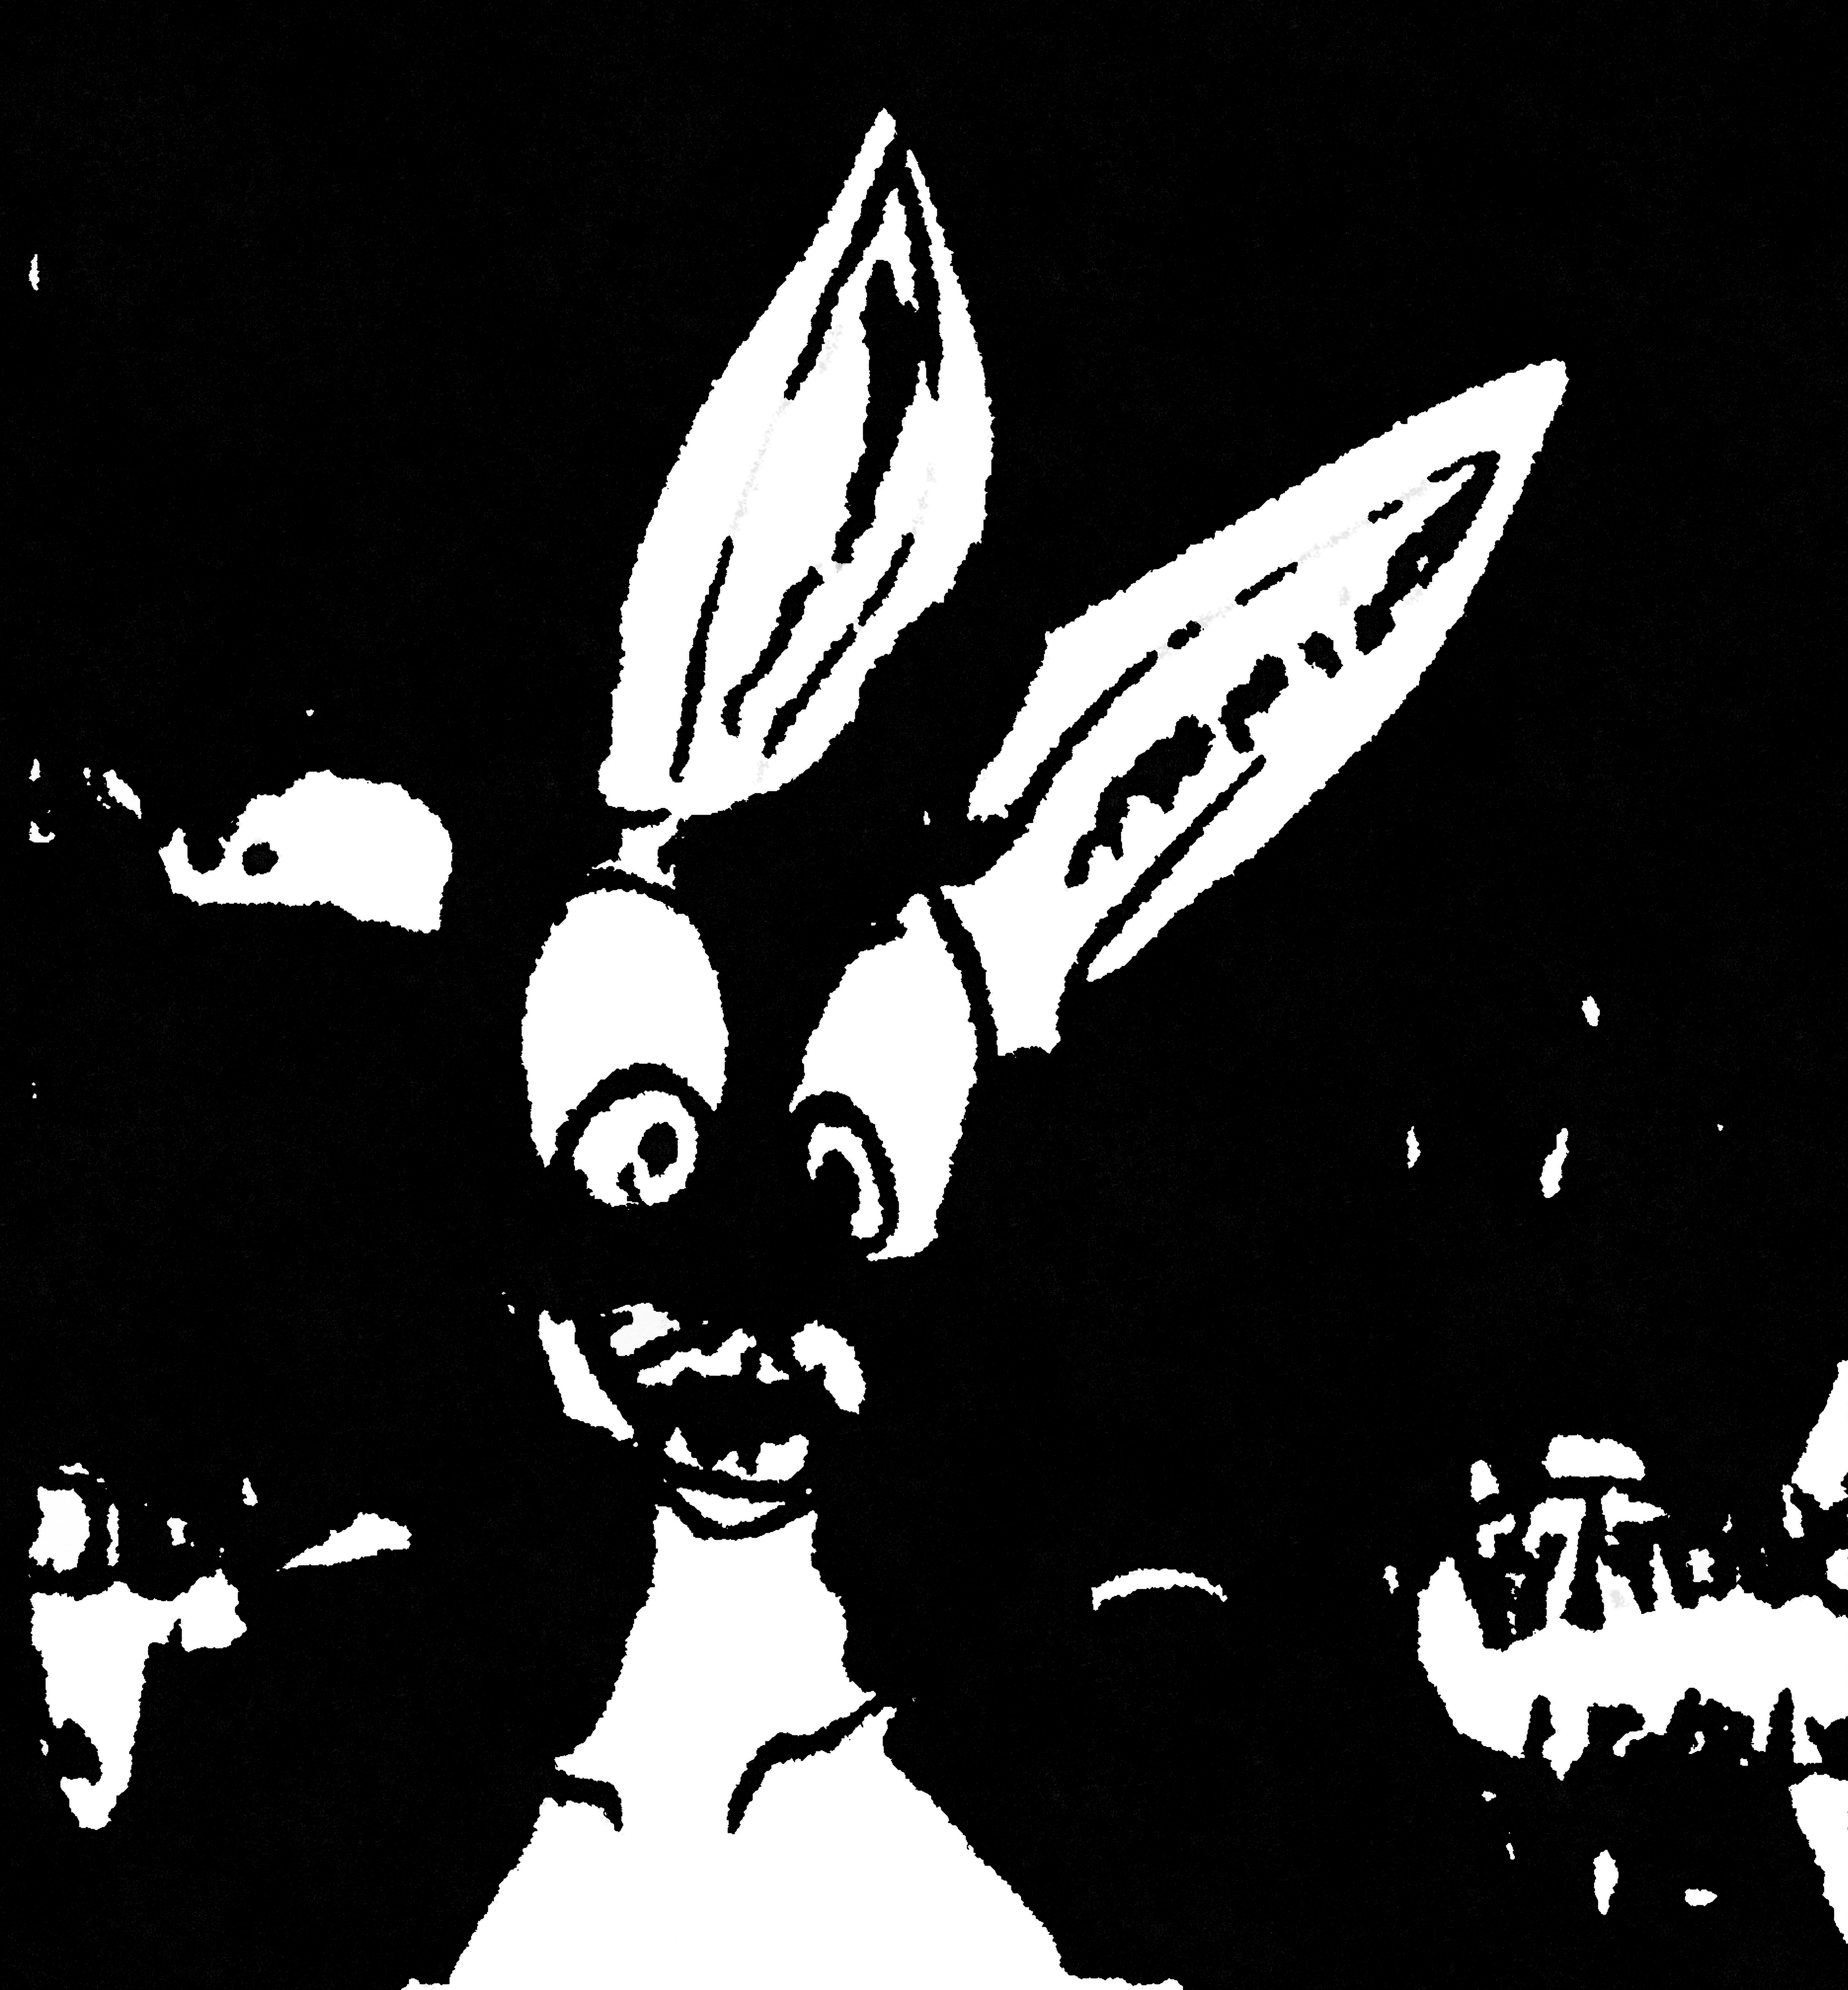 The Bunny in Black + White